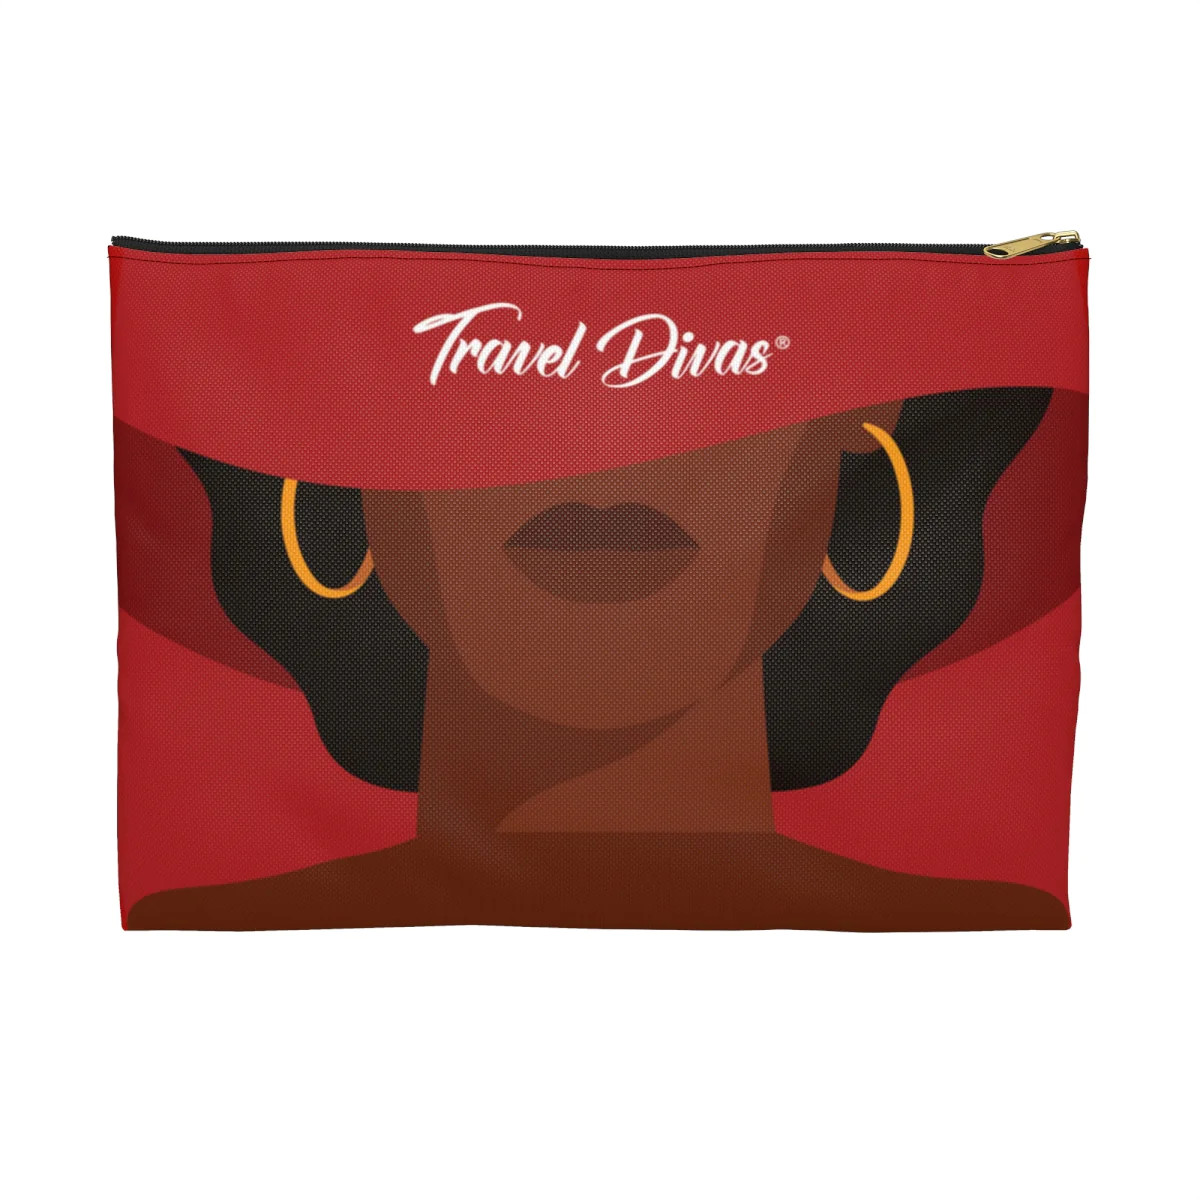 Travel Divas product design, pouch